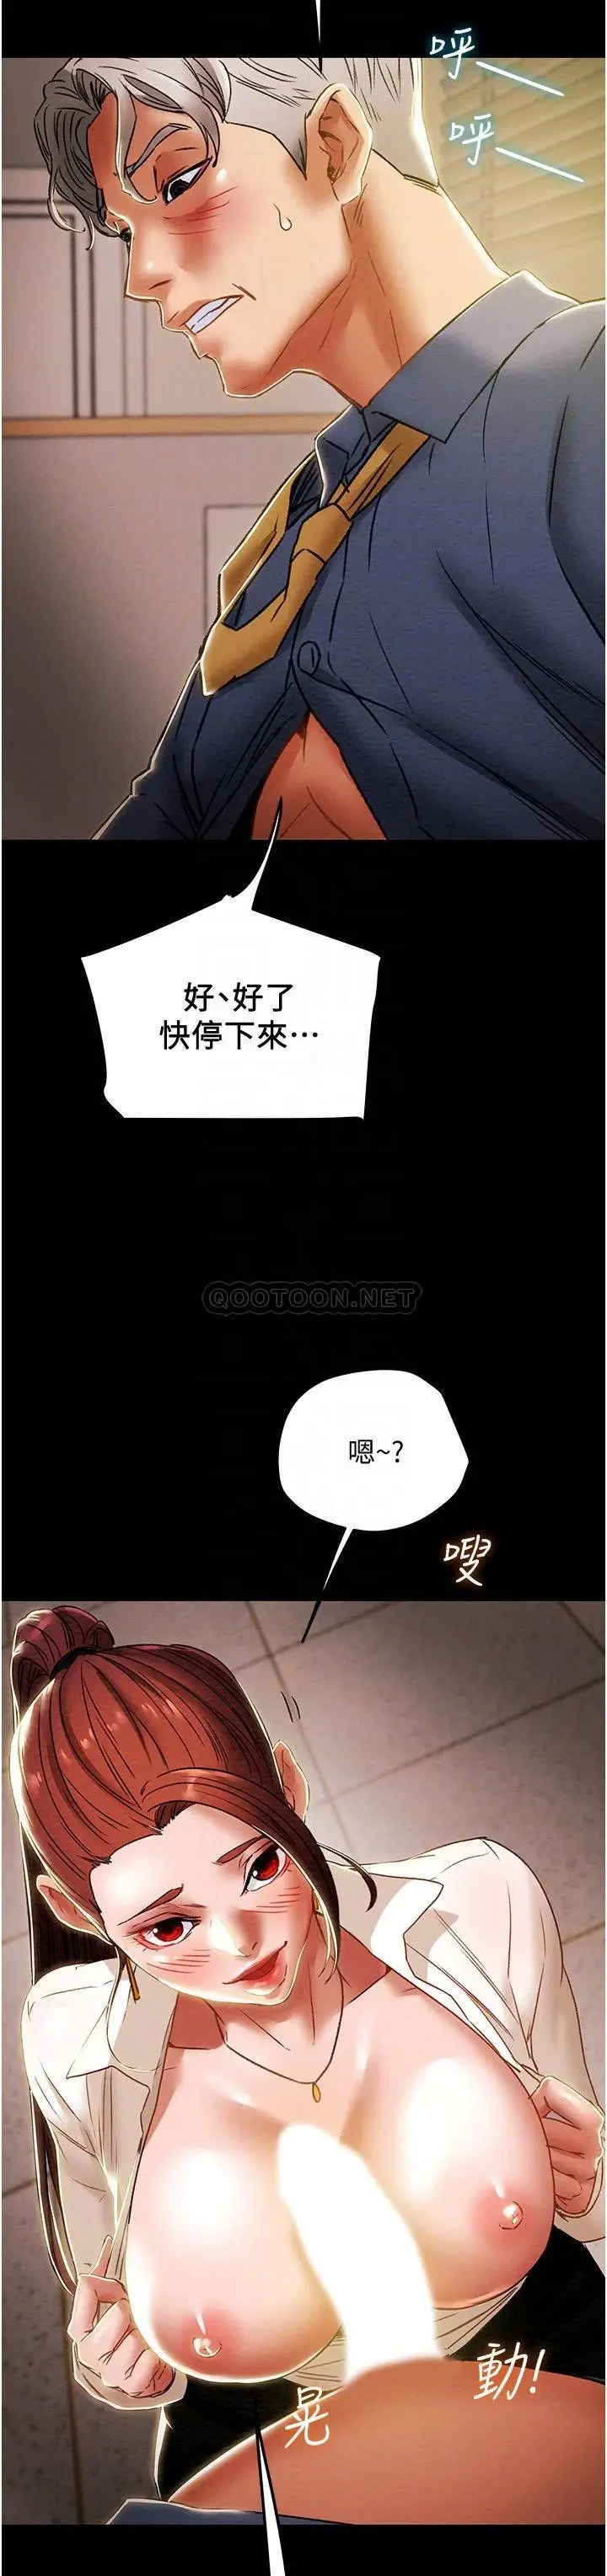 《纯情女攻略计划》漫画 第46话 妍霏的过去